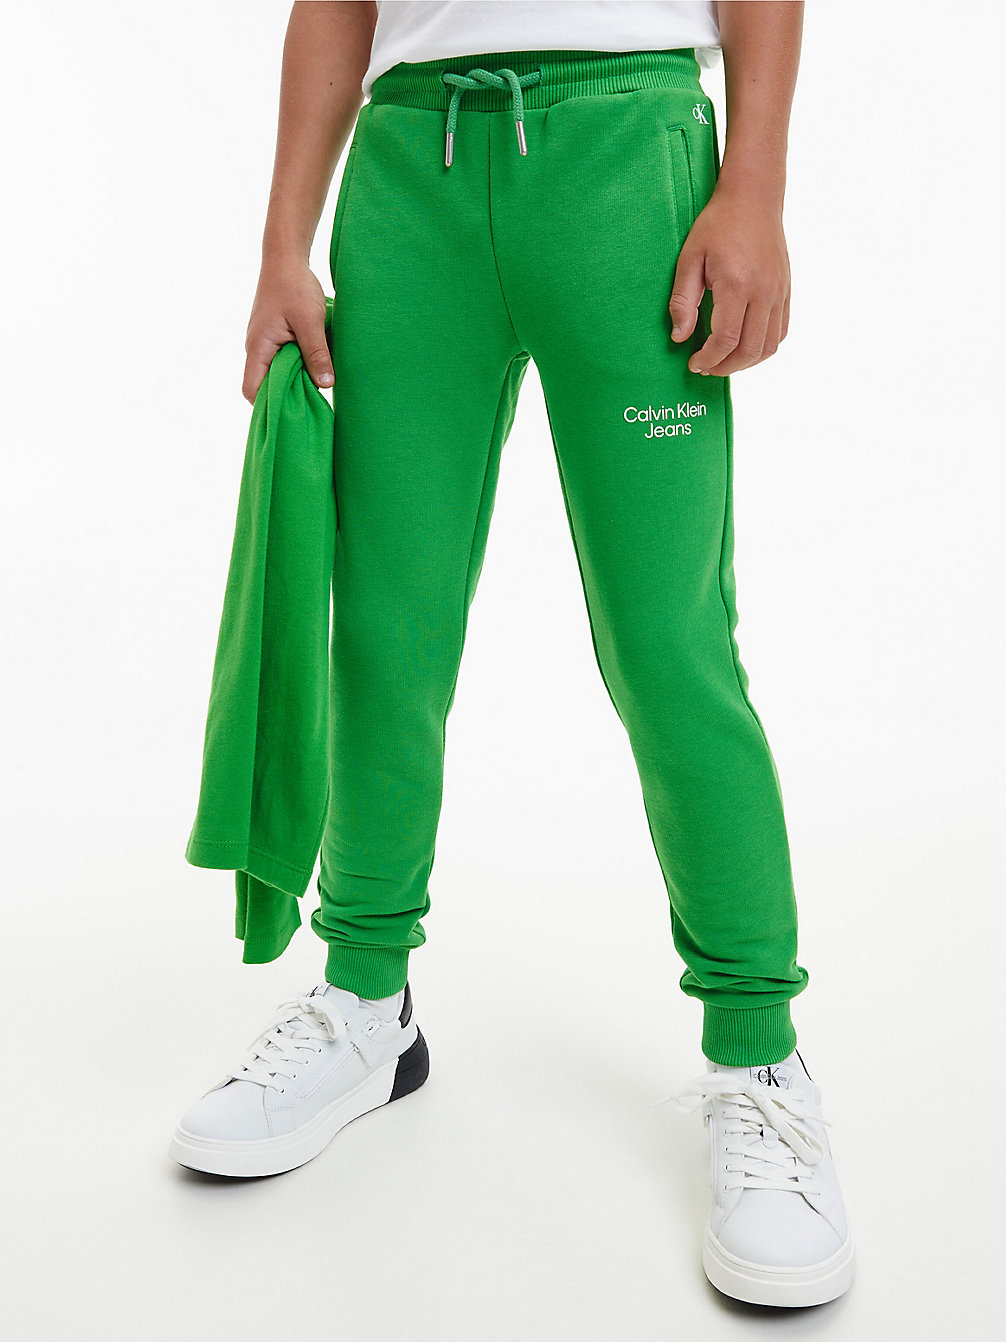 GALVANIC GREEN Pantalon De Jogging En Coton Bio undefined boys Calvin Klein